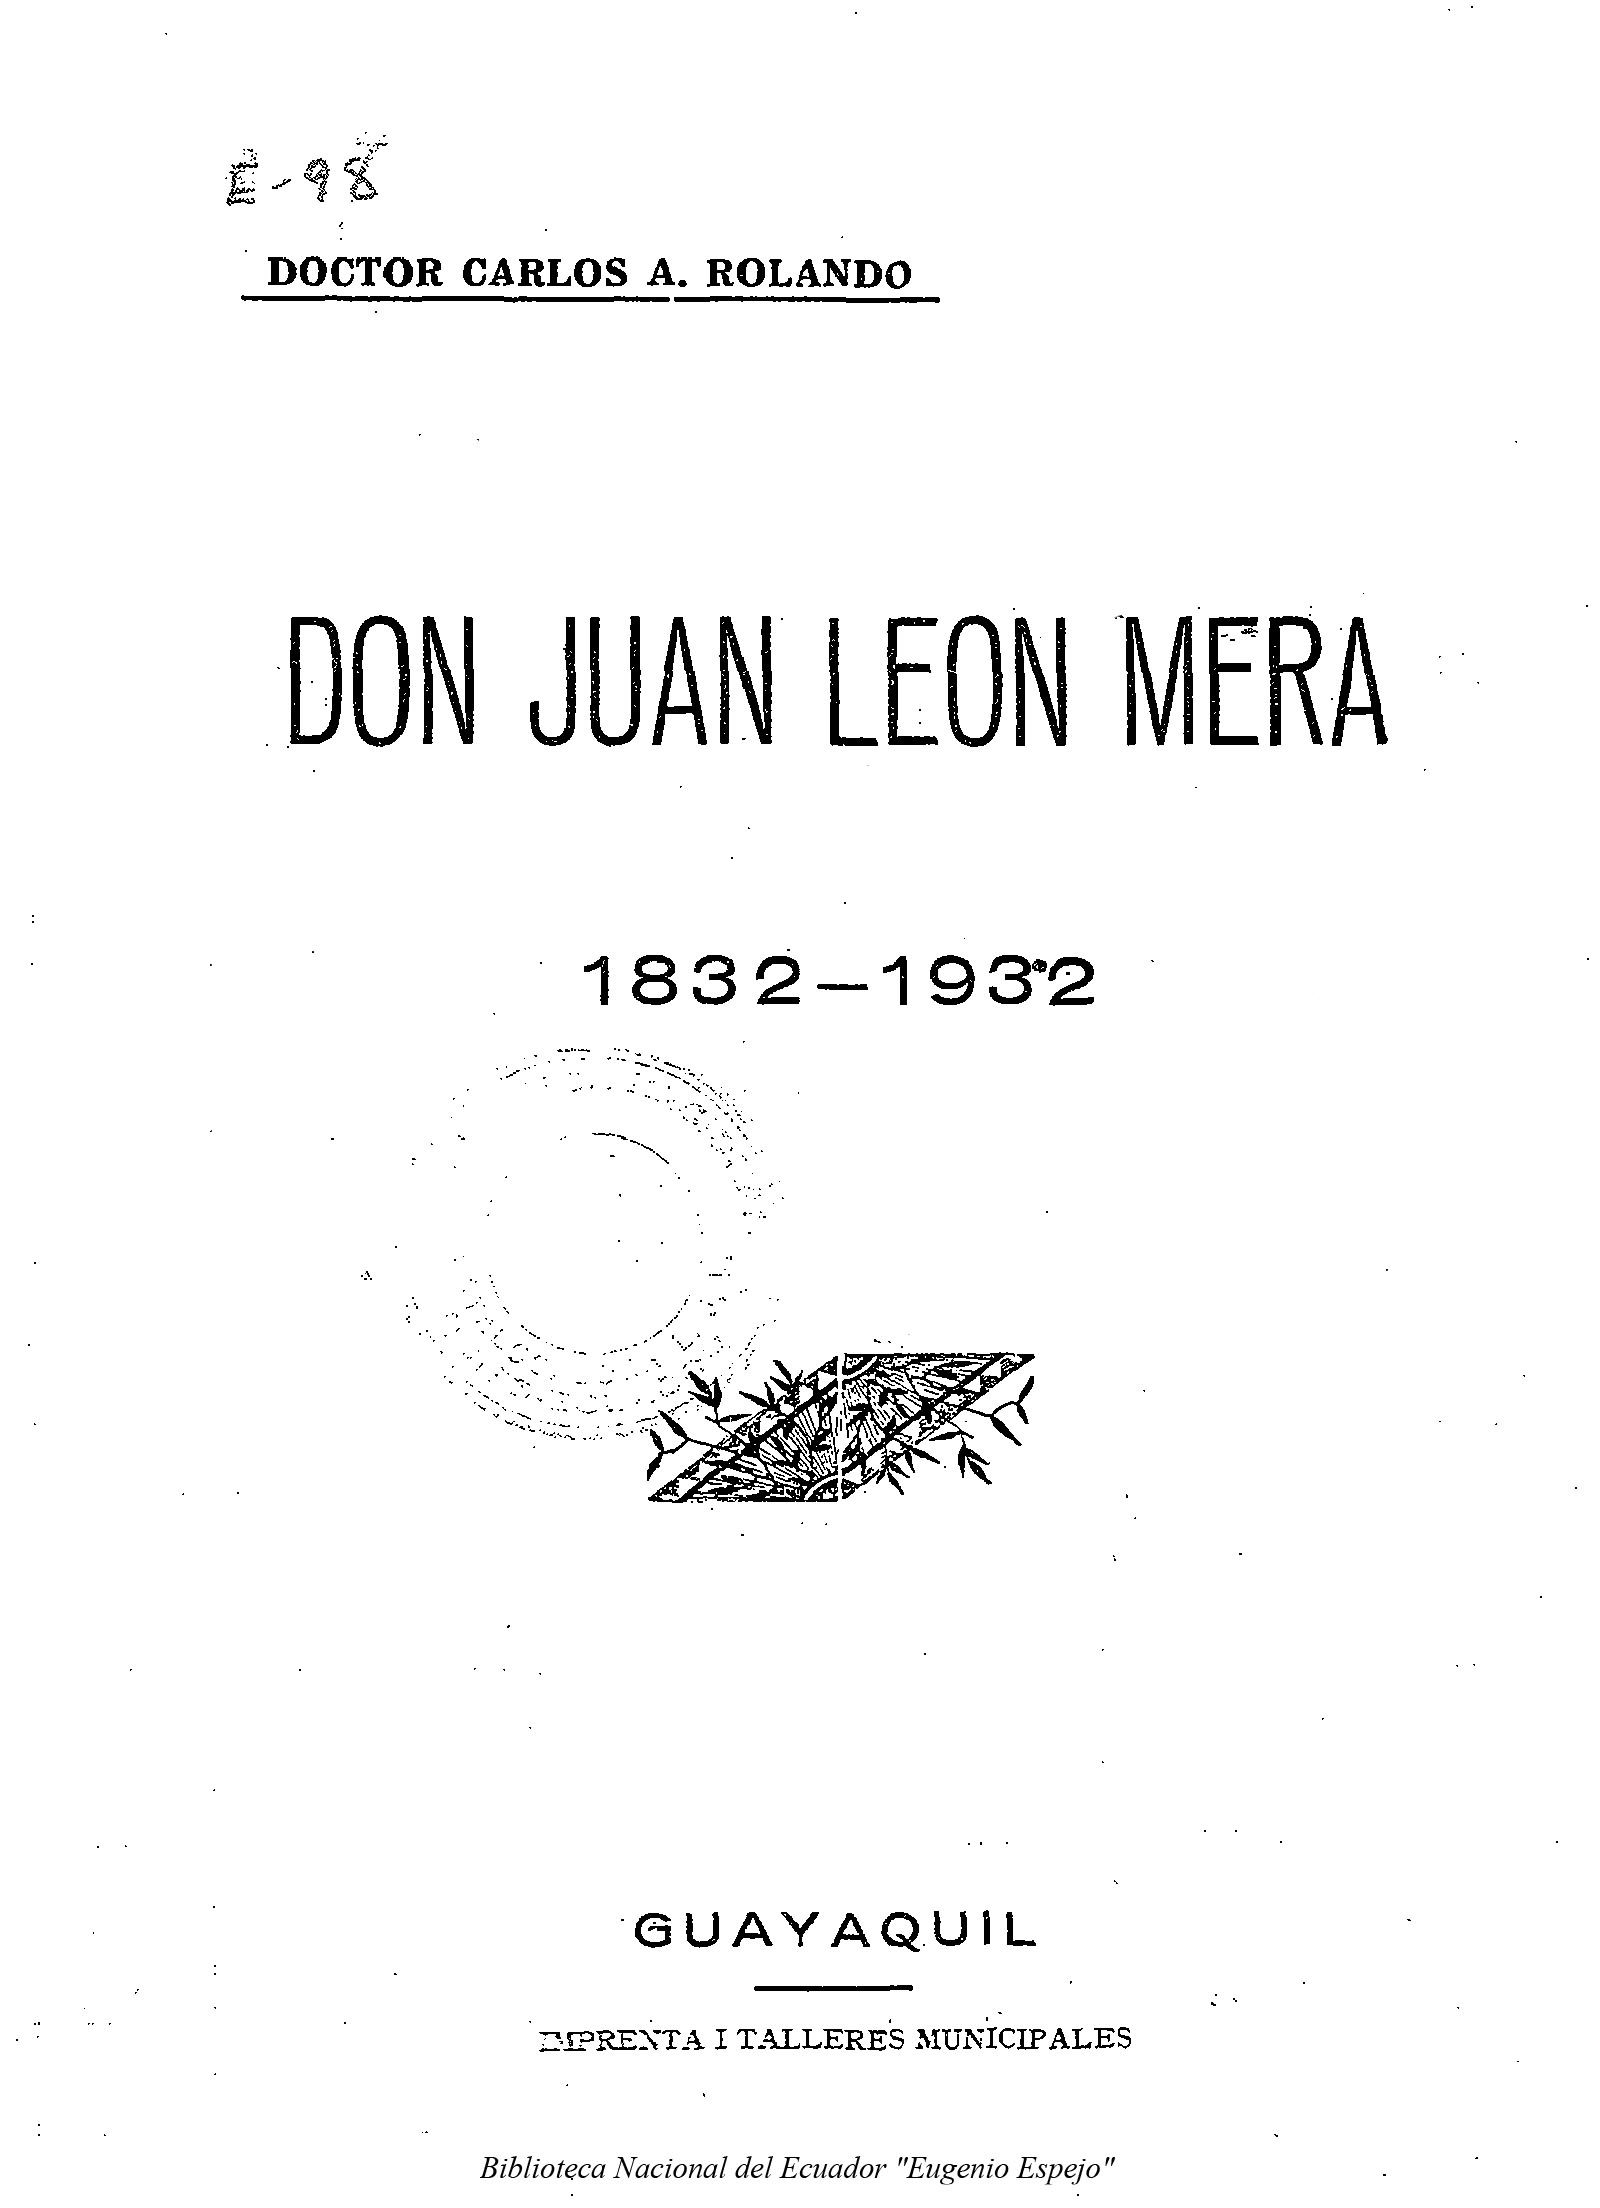 Don Juan León Mera